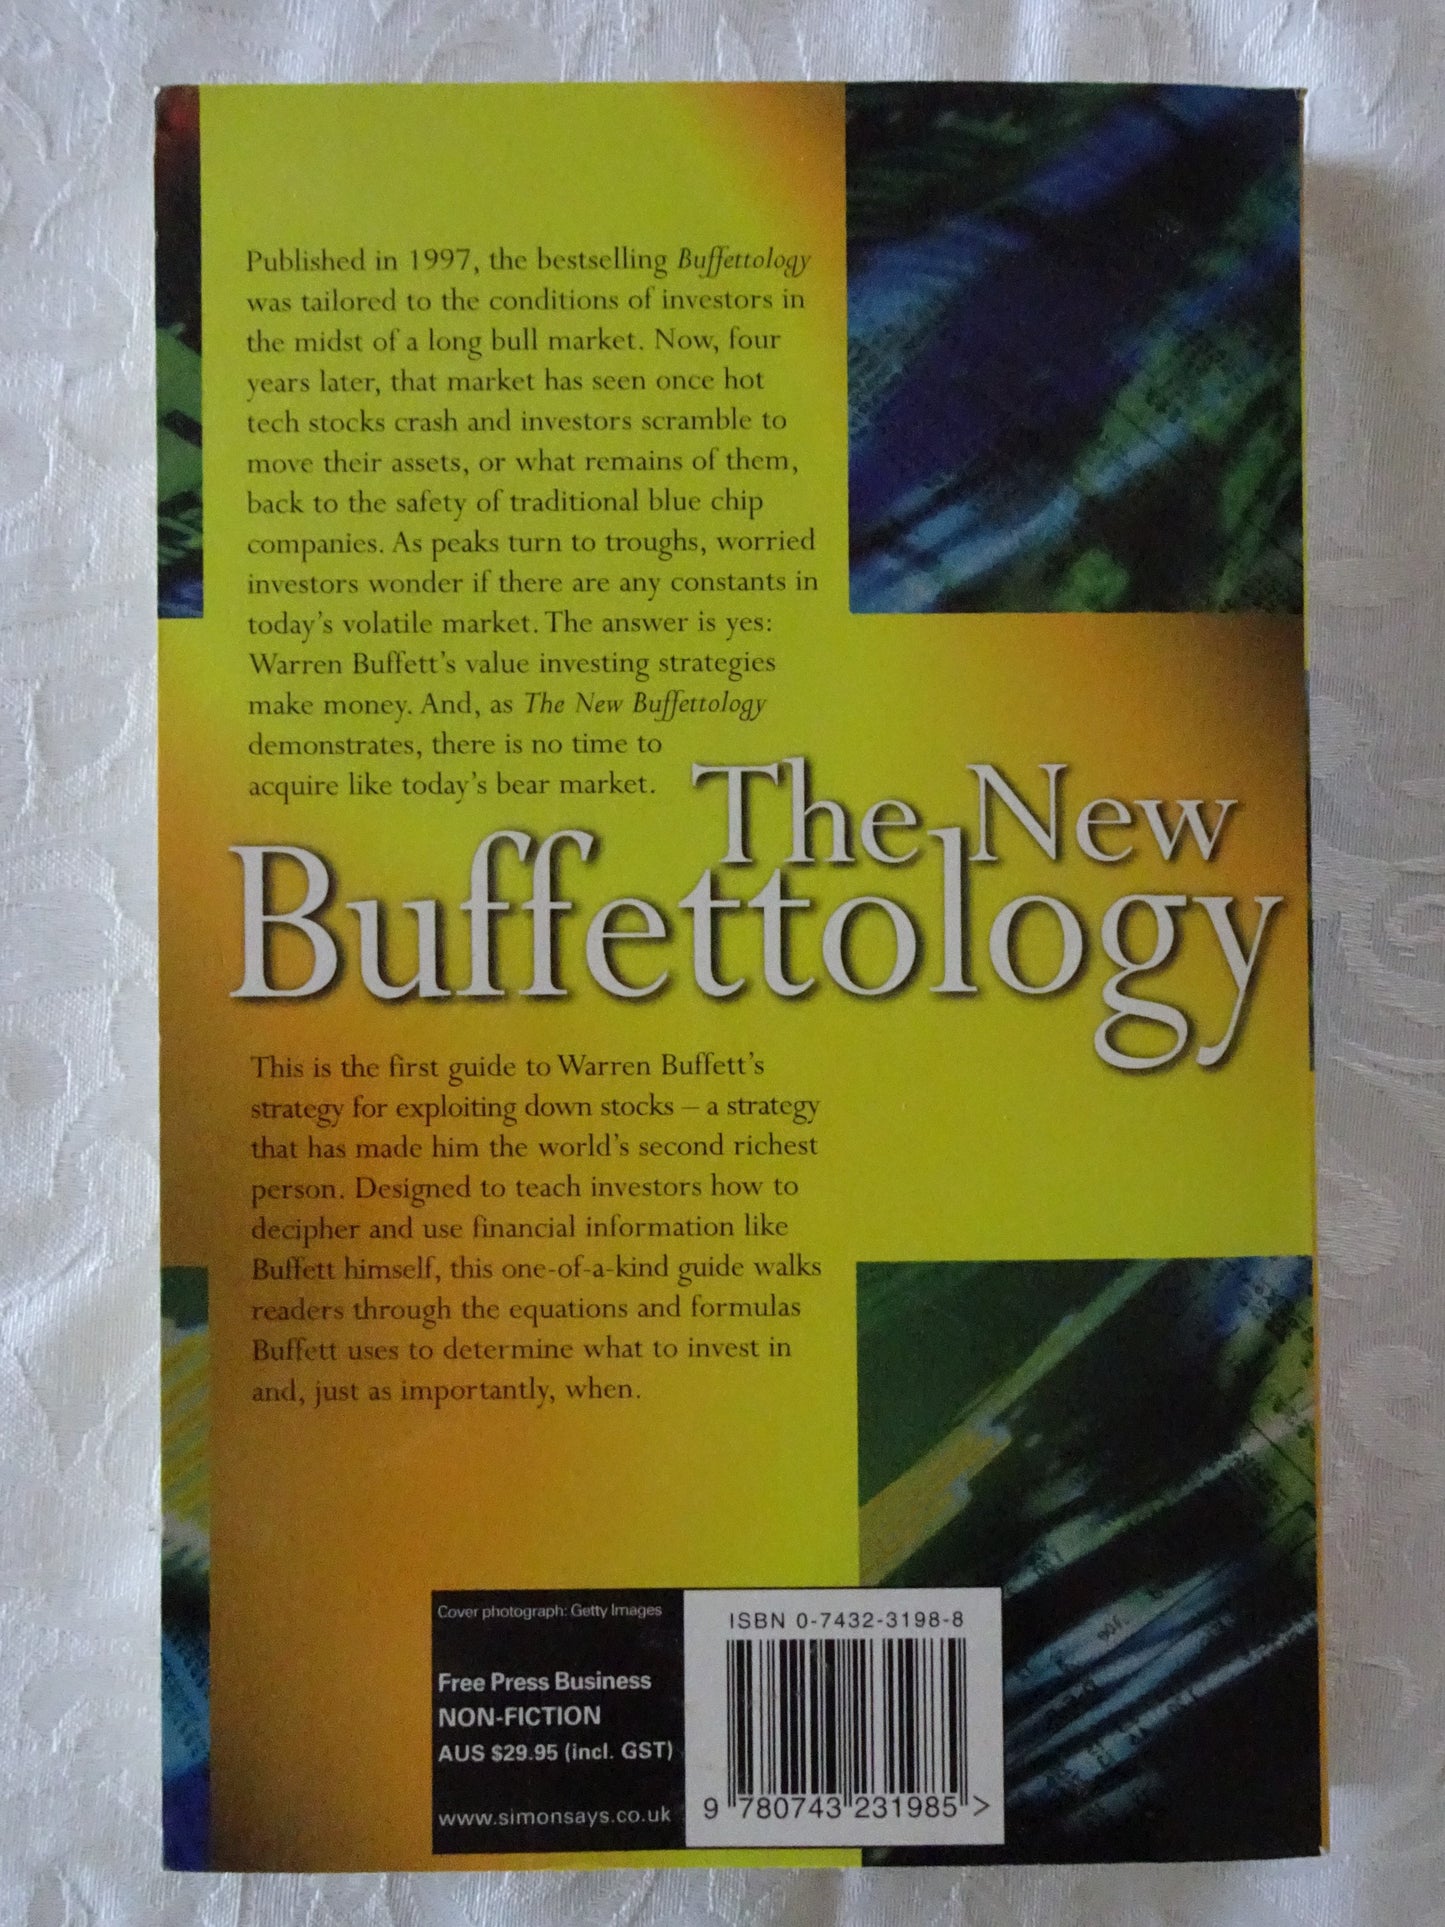 The New Buffettology by Mary Buffett and David Clark